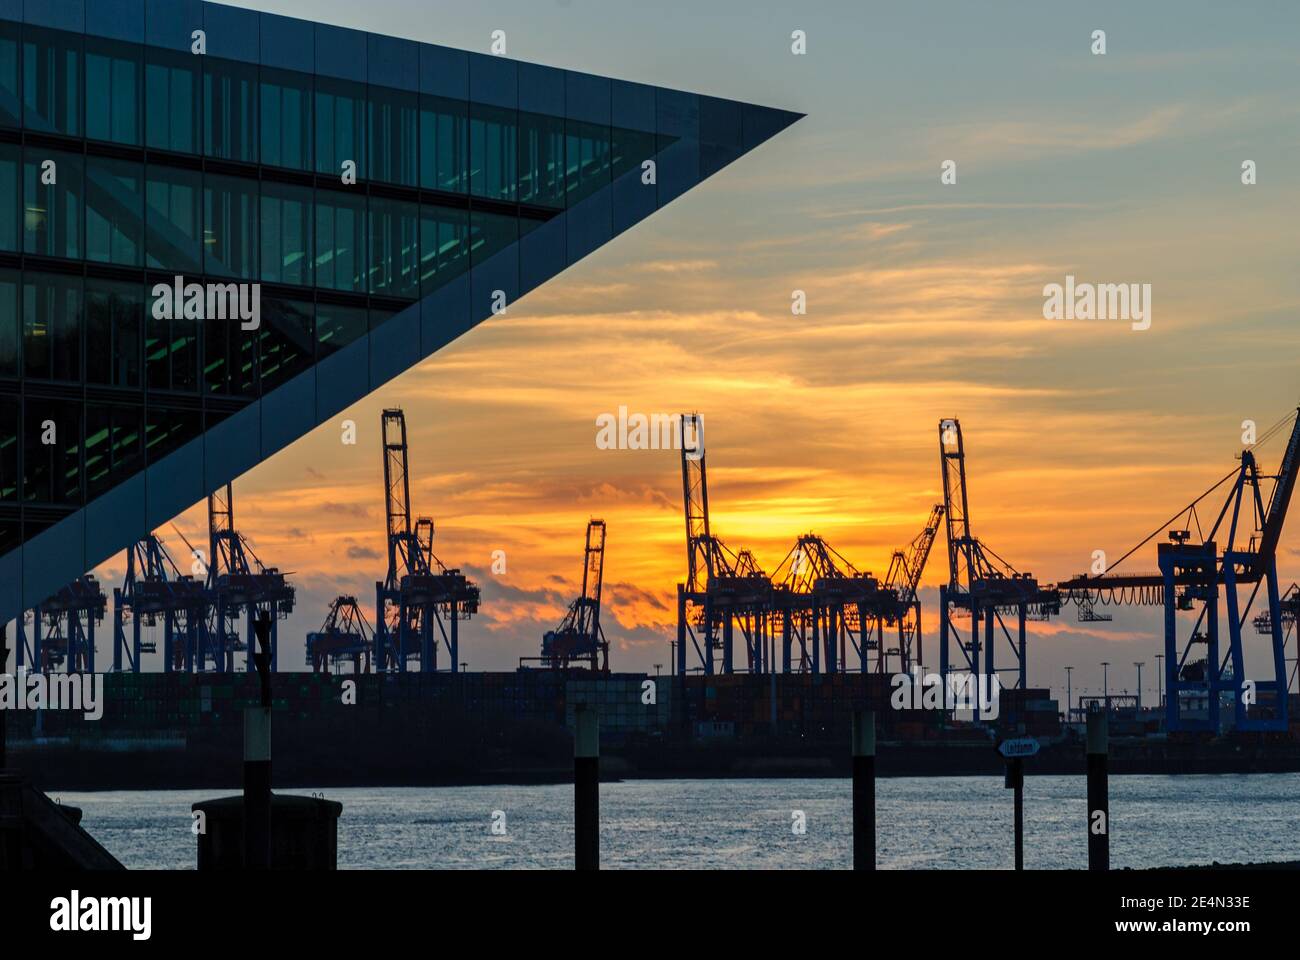 Port de Hambourg, Allemagne : silhouettes de grues au coucher du soleil par temps nuageux Banque D'Images